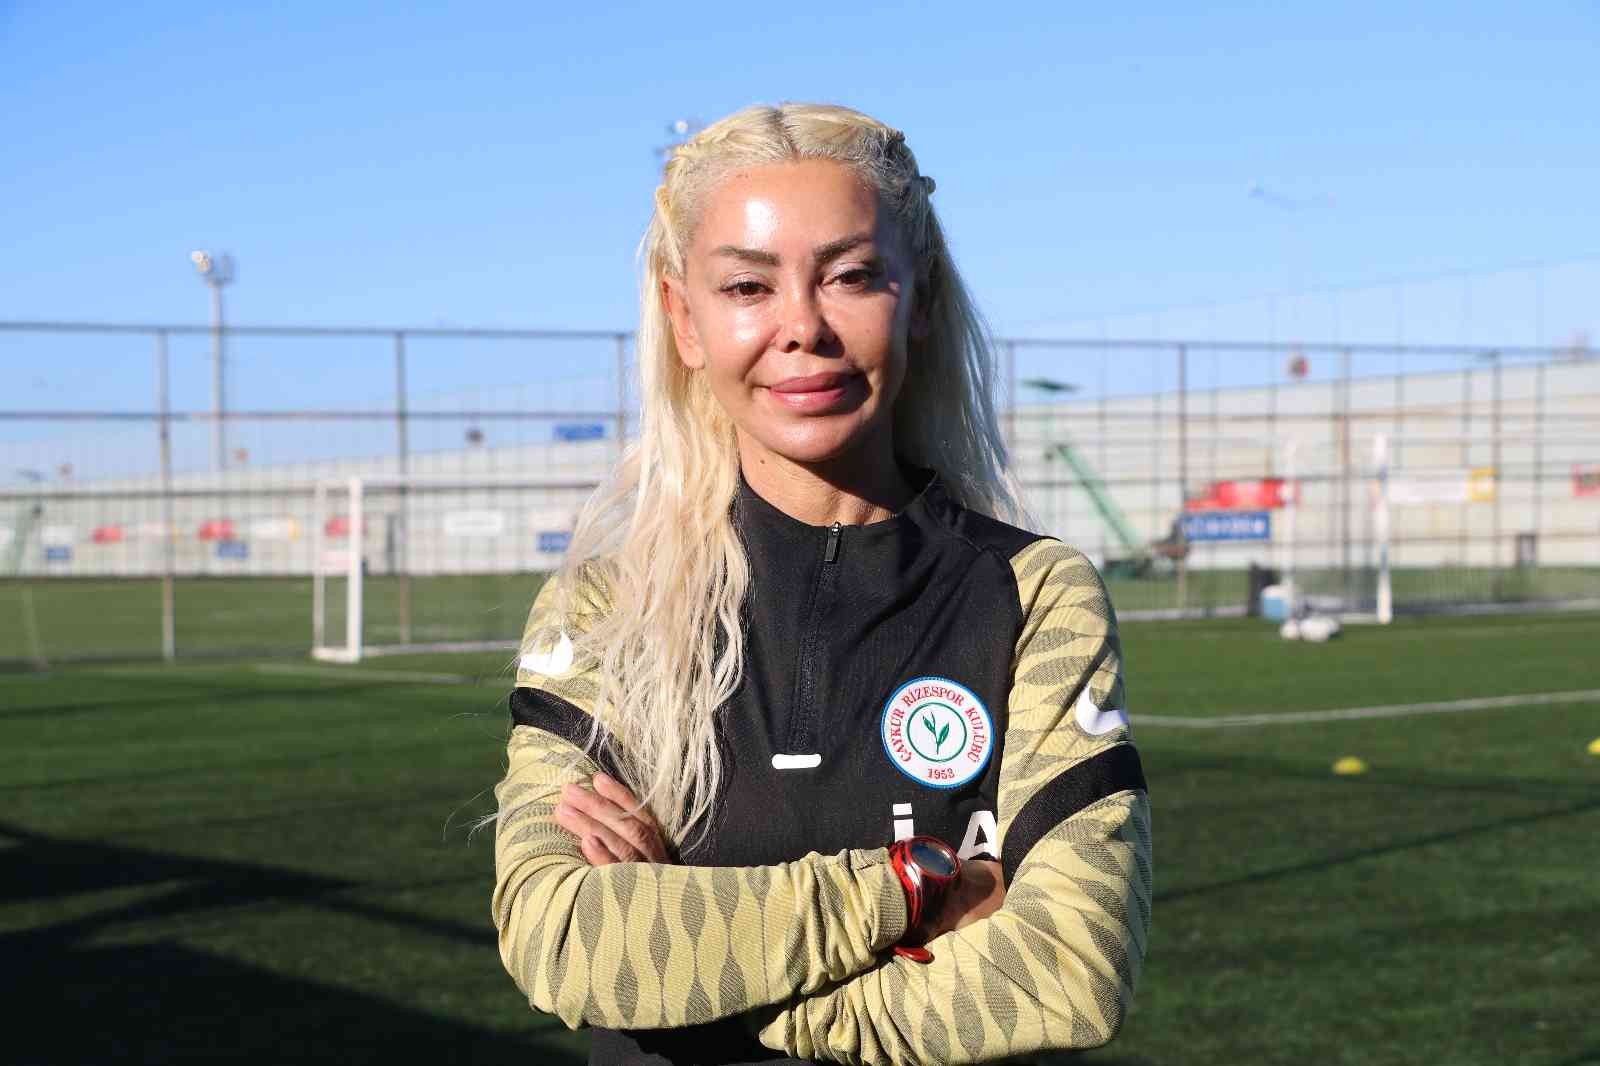 Rize’nin kadın futbolcuları ve teknik direktörü hedefe kilitlendi #rize